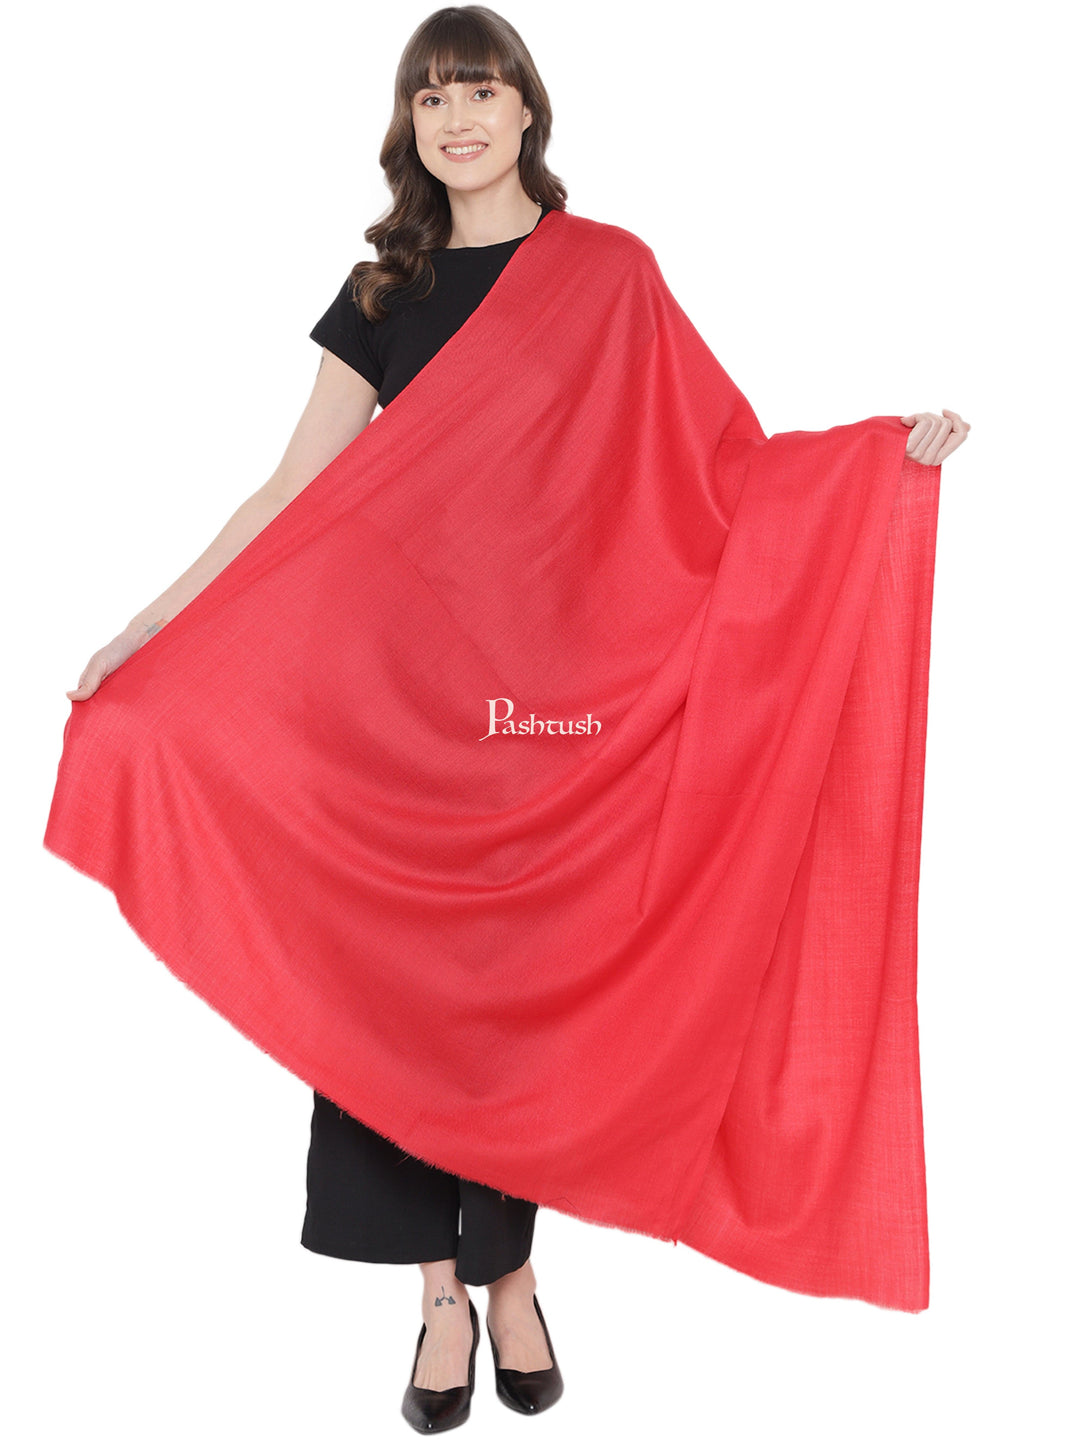 Pashtush India Womens Shawls Pashtush Womens Fine Wool Shawl, Extra Soft, Basics Solid, Scarlet Red